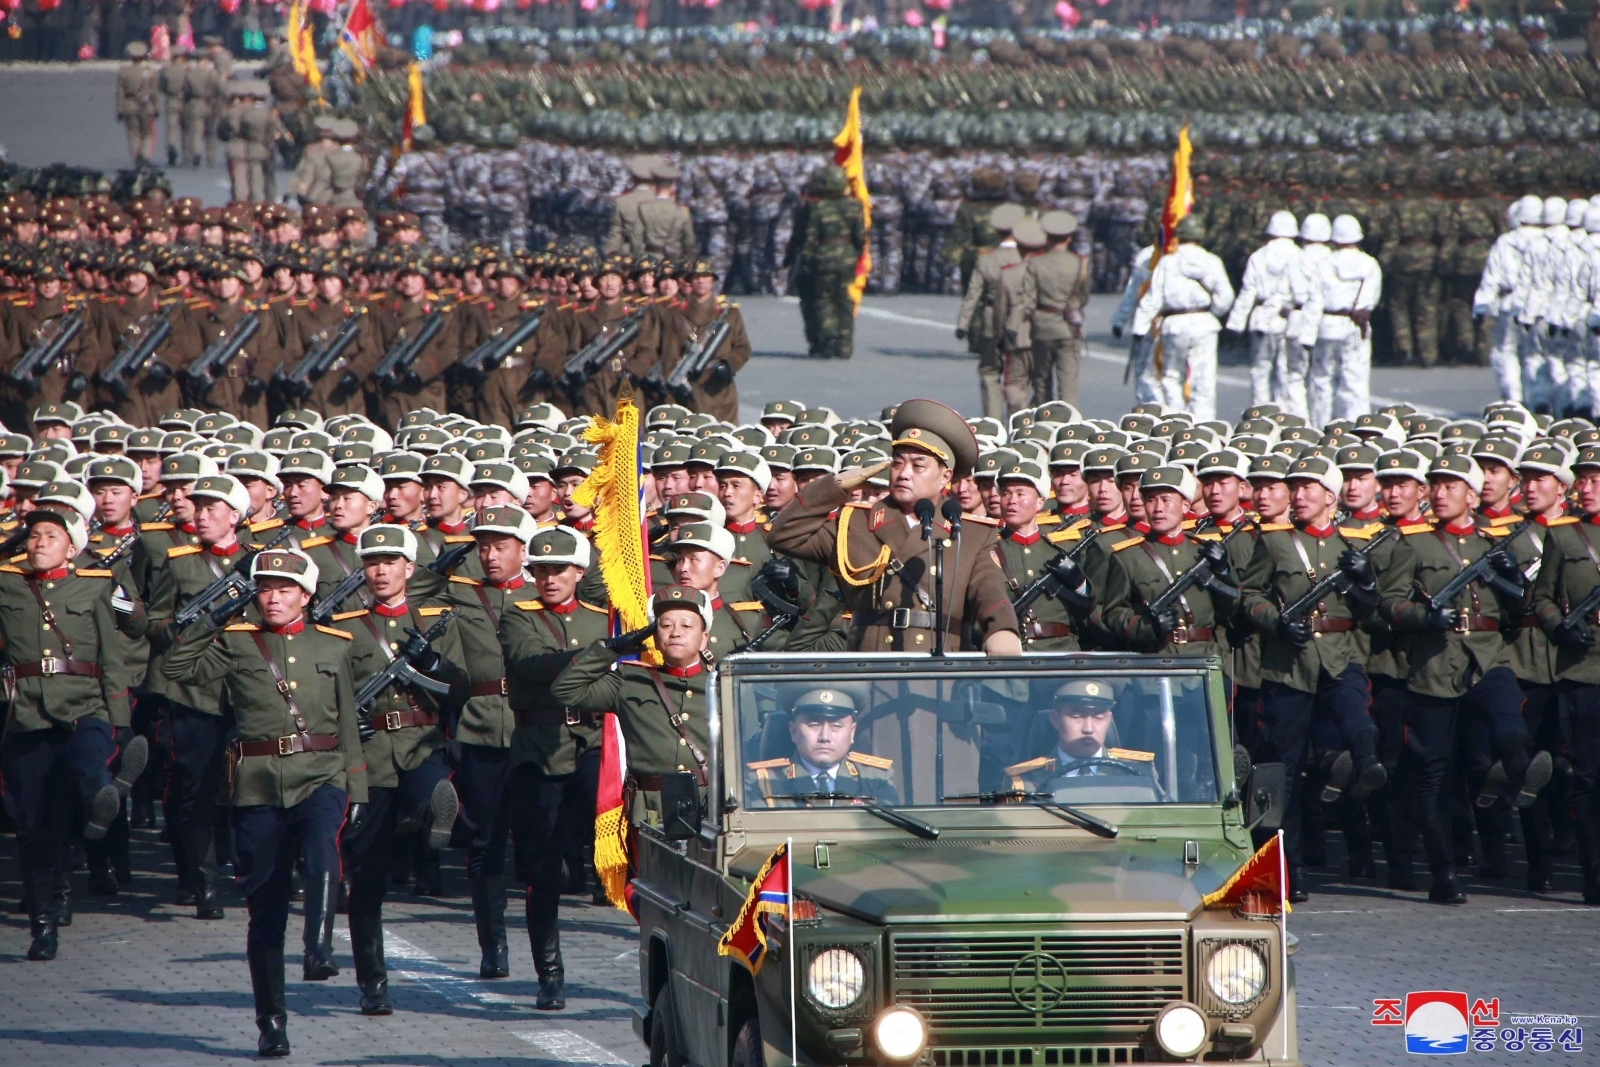 Grand military parade 